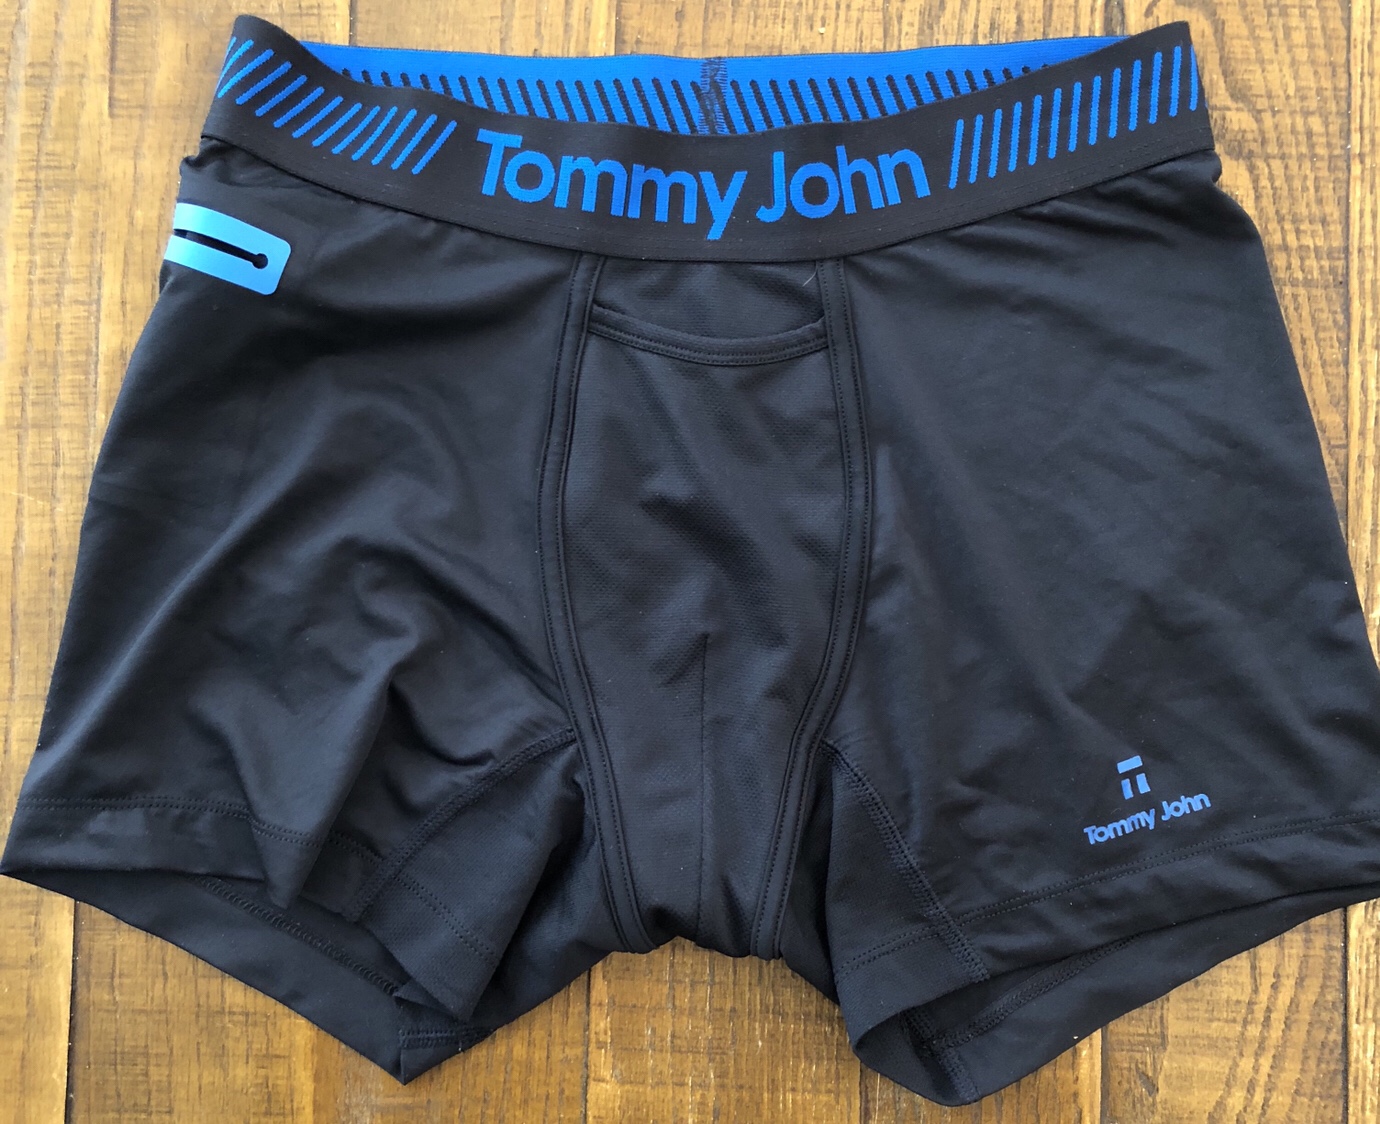 reviews tommy john underwear